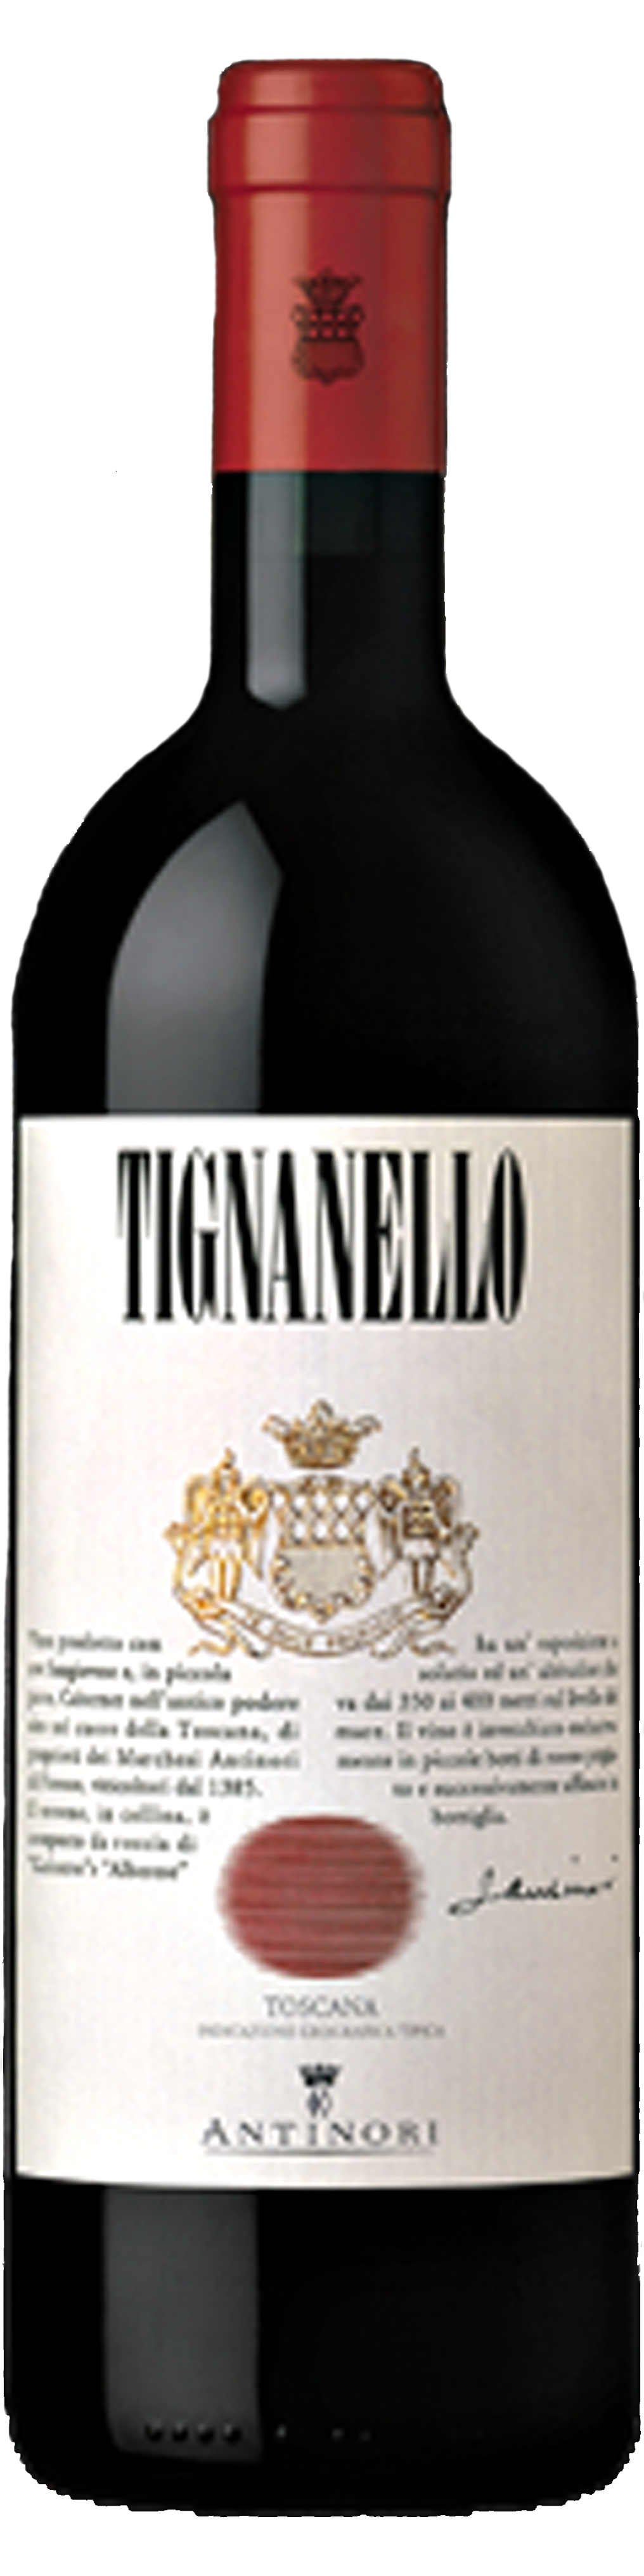 Bottle shot of 2011 Tignanello